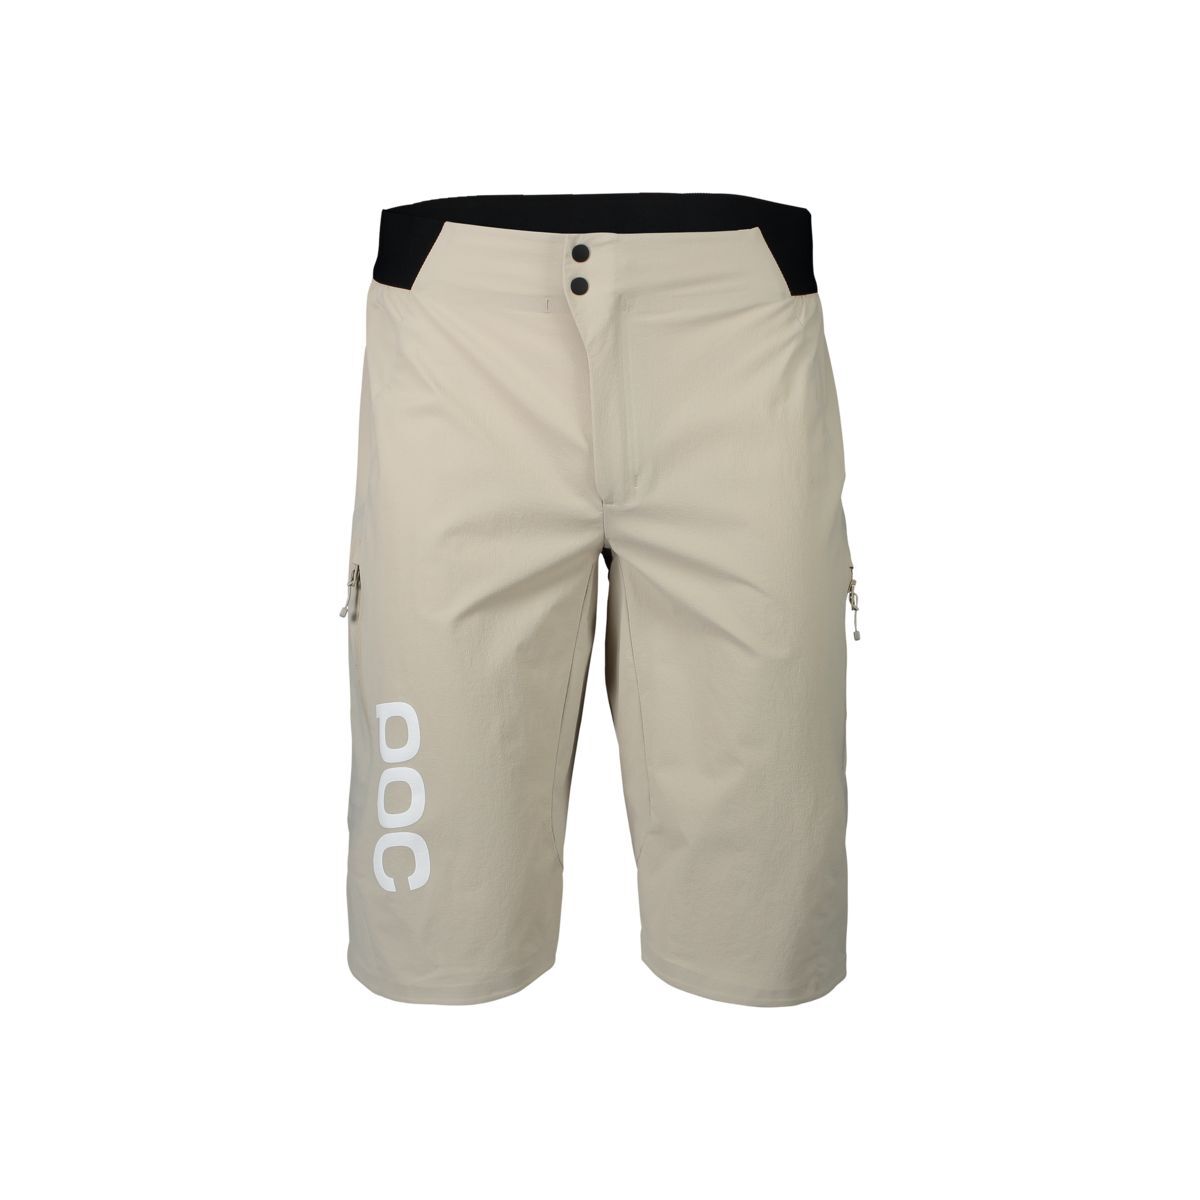 Poc Guardian Air shorts - Pantalones cortos MTB - Hombre